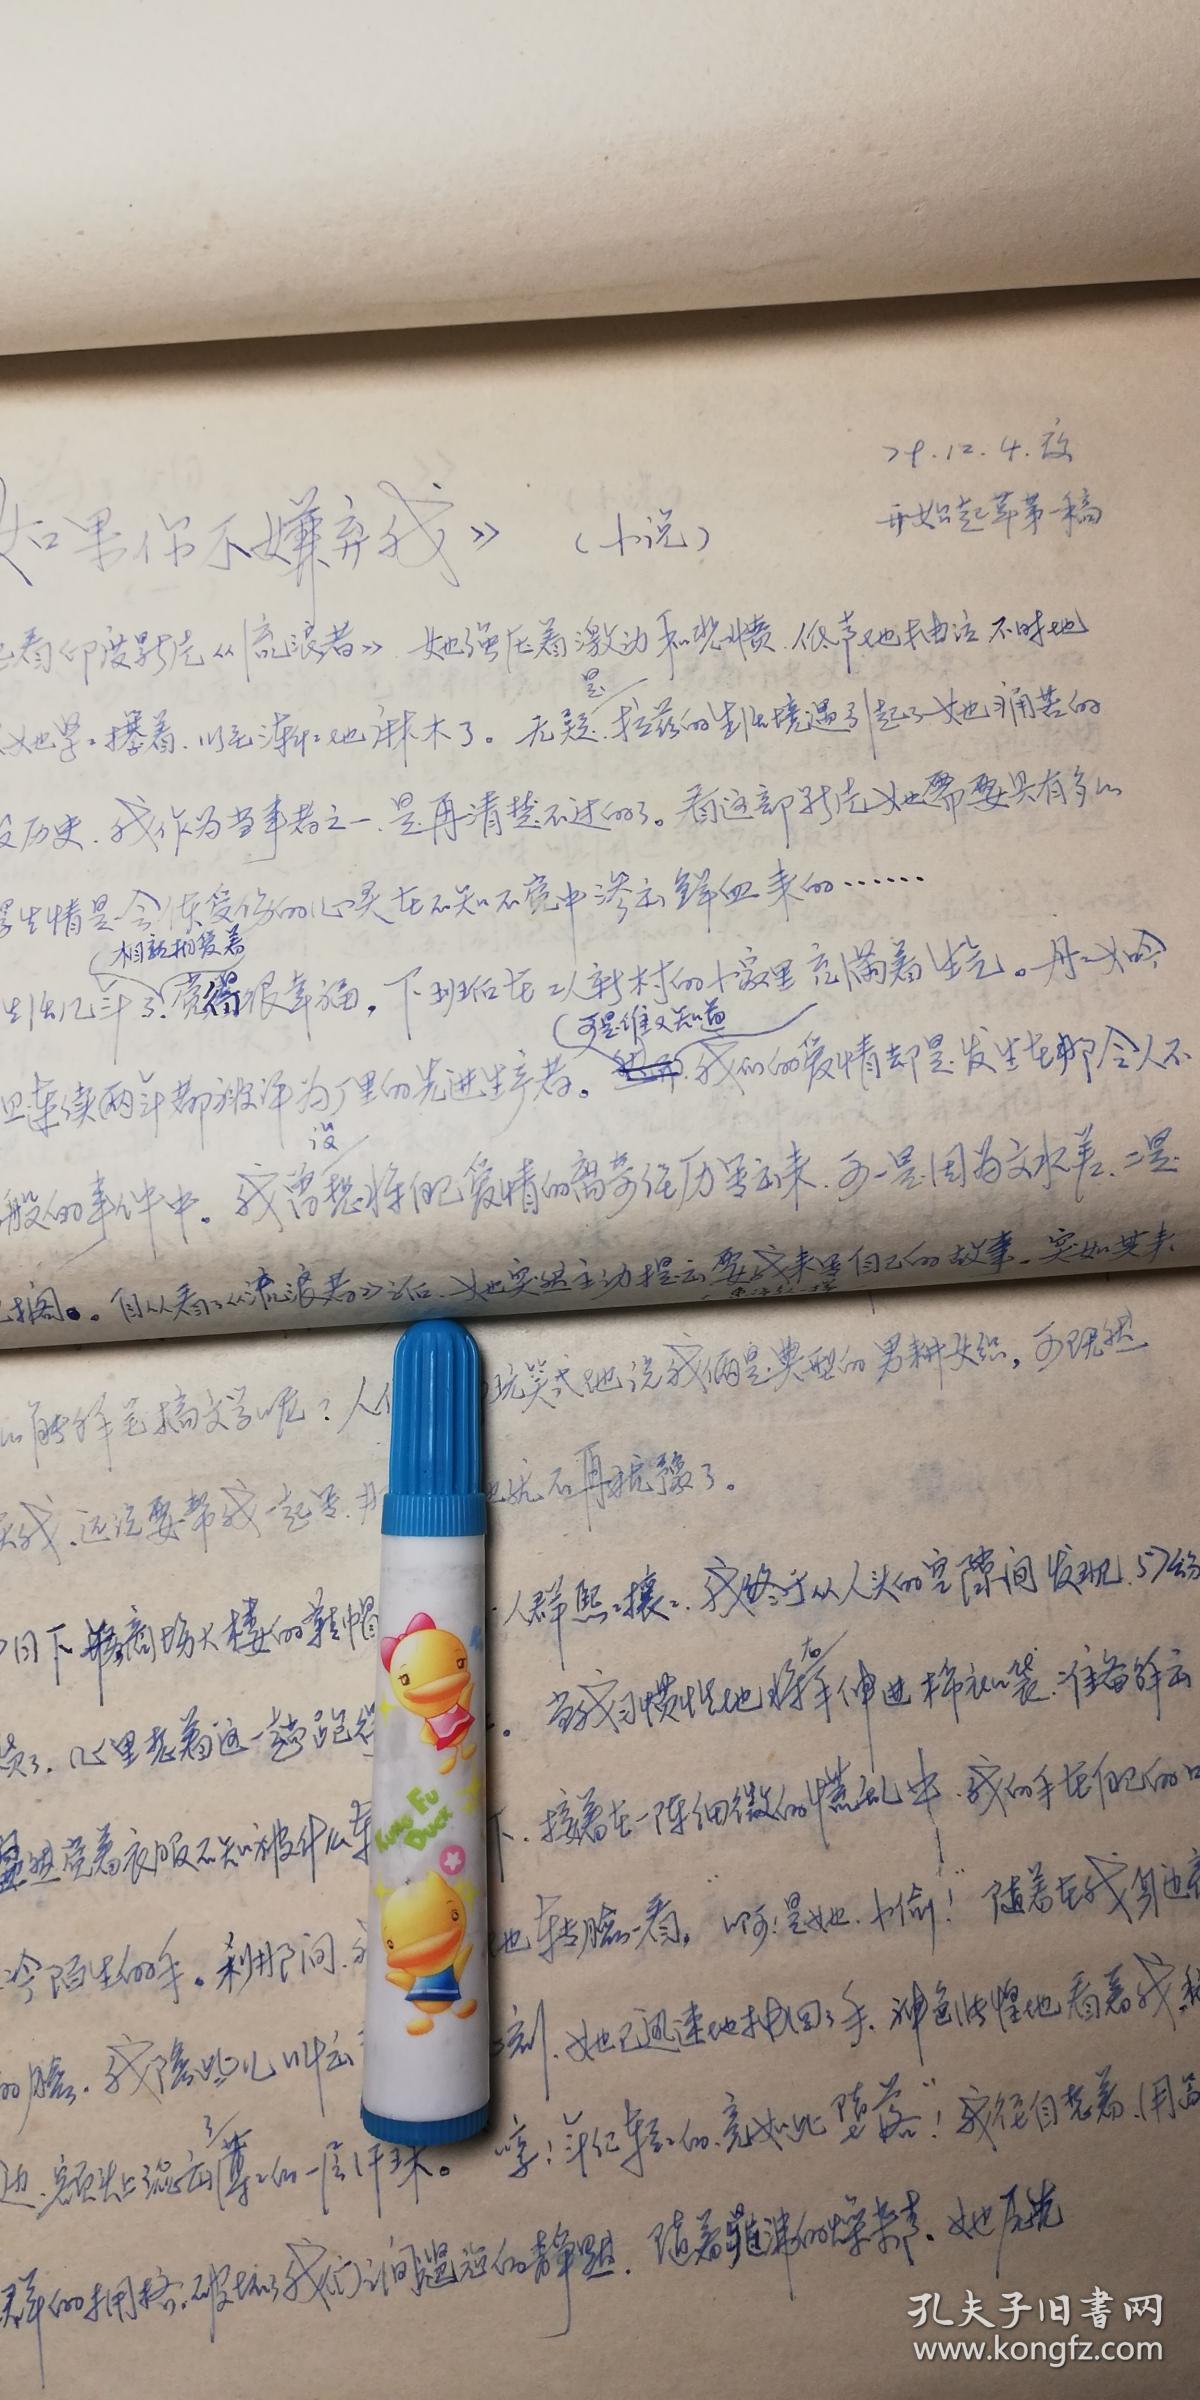 1979年扬中市、扬中县-著名画家-小说手稿-《如果你不嫌弃我、为了姐姐》大纸5页码残稿-盐城师范、盐城工人文化宫稿纸-